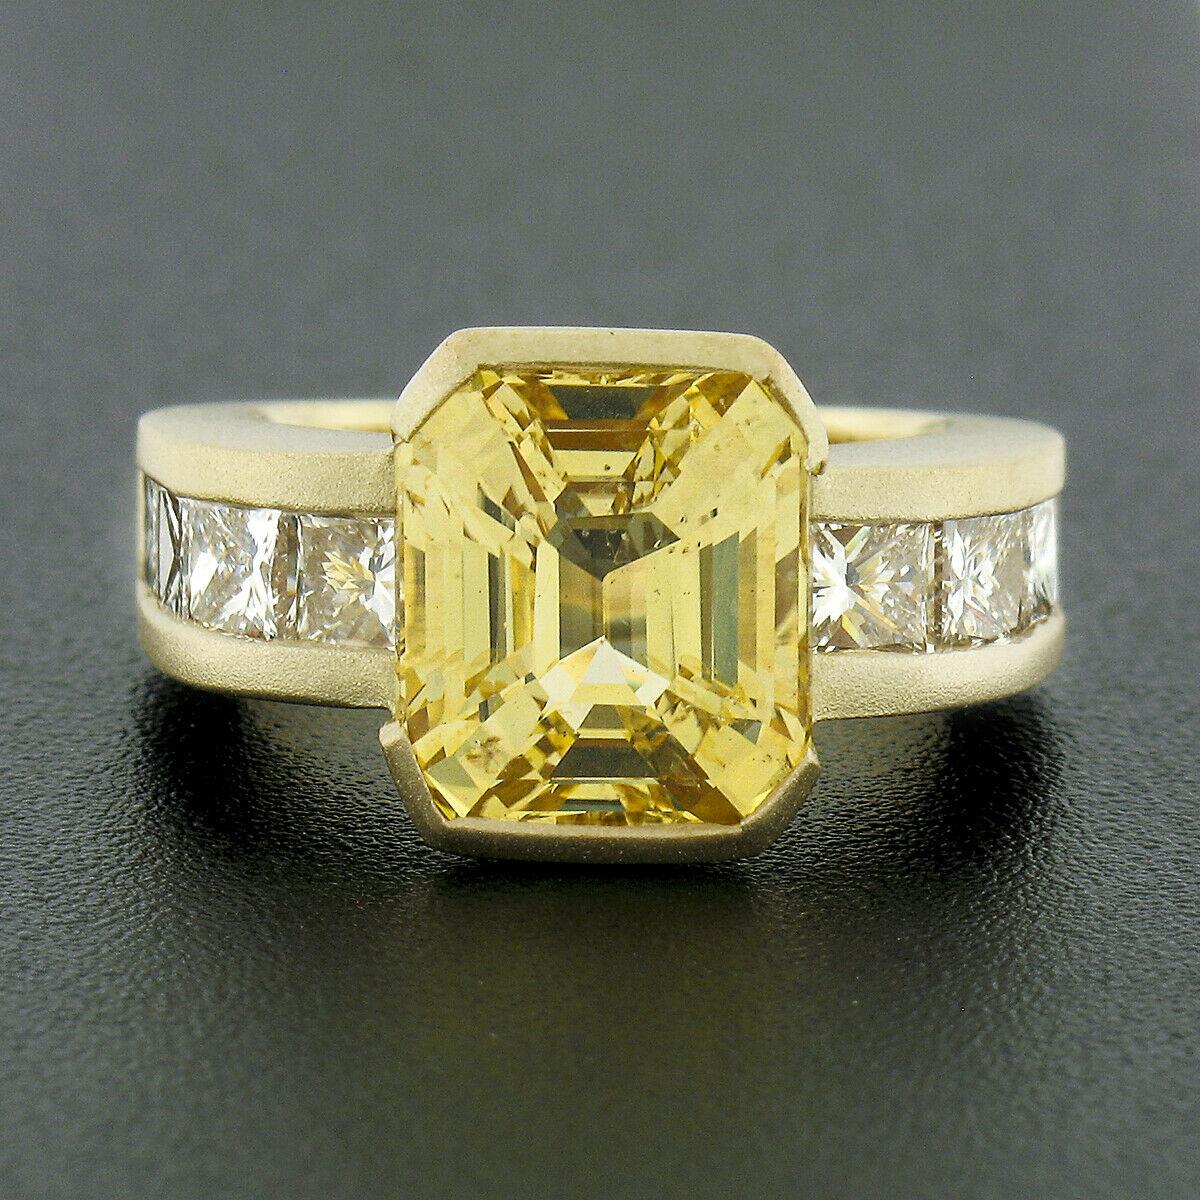 Cette bague de fiançailles fantaisie et inhabituelle en saphir jaune et diamant est très bien et solidement réalisée en or jaune 18k massif. Elle est ornée d'un saphir jaune naturel, certifié AGL, de taille émeraude, pesant exactement 6,04 carats et